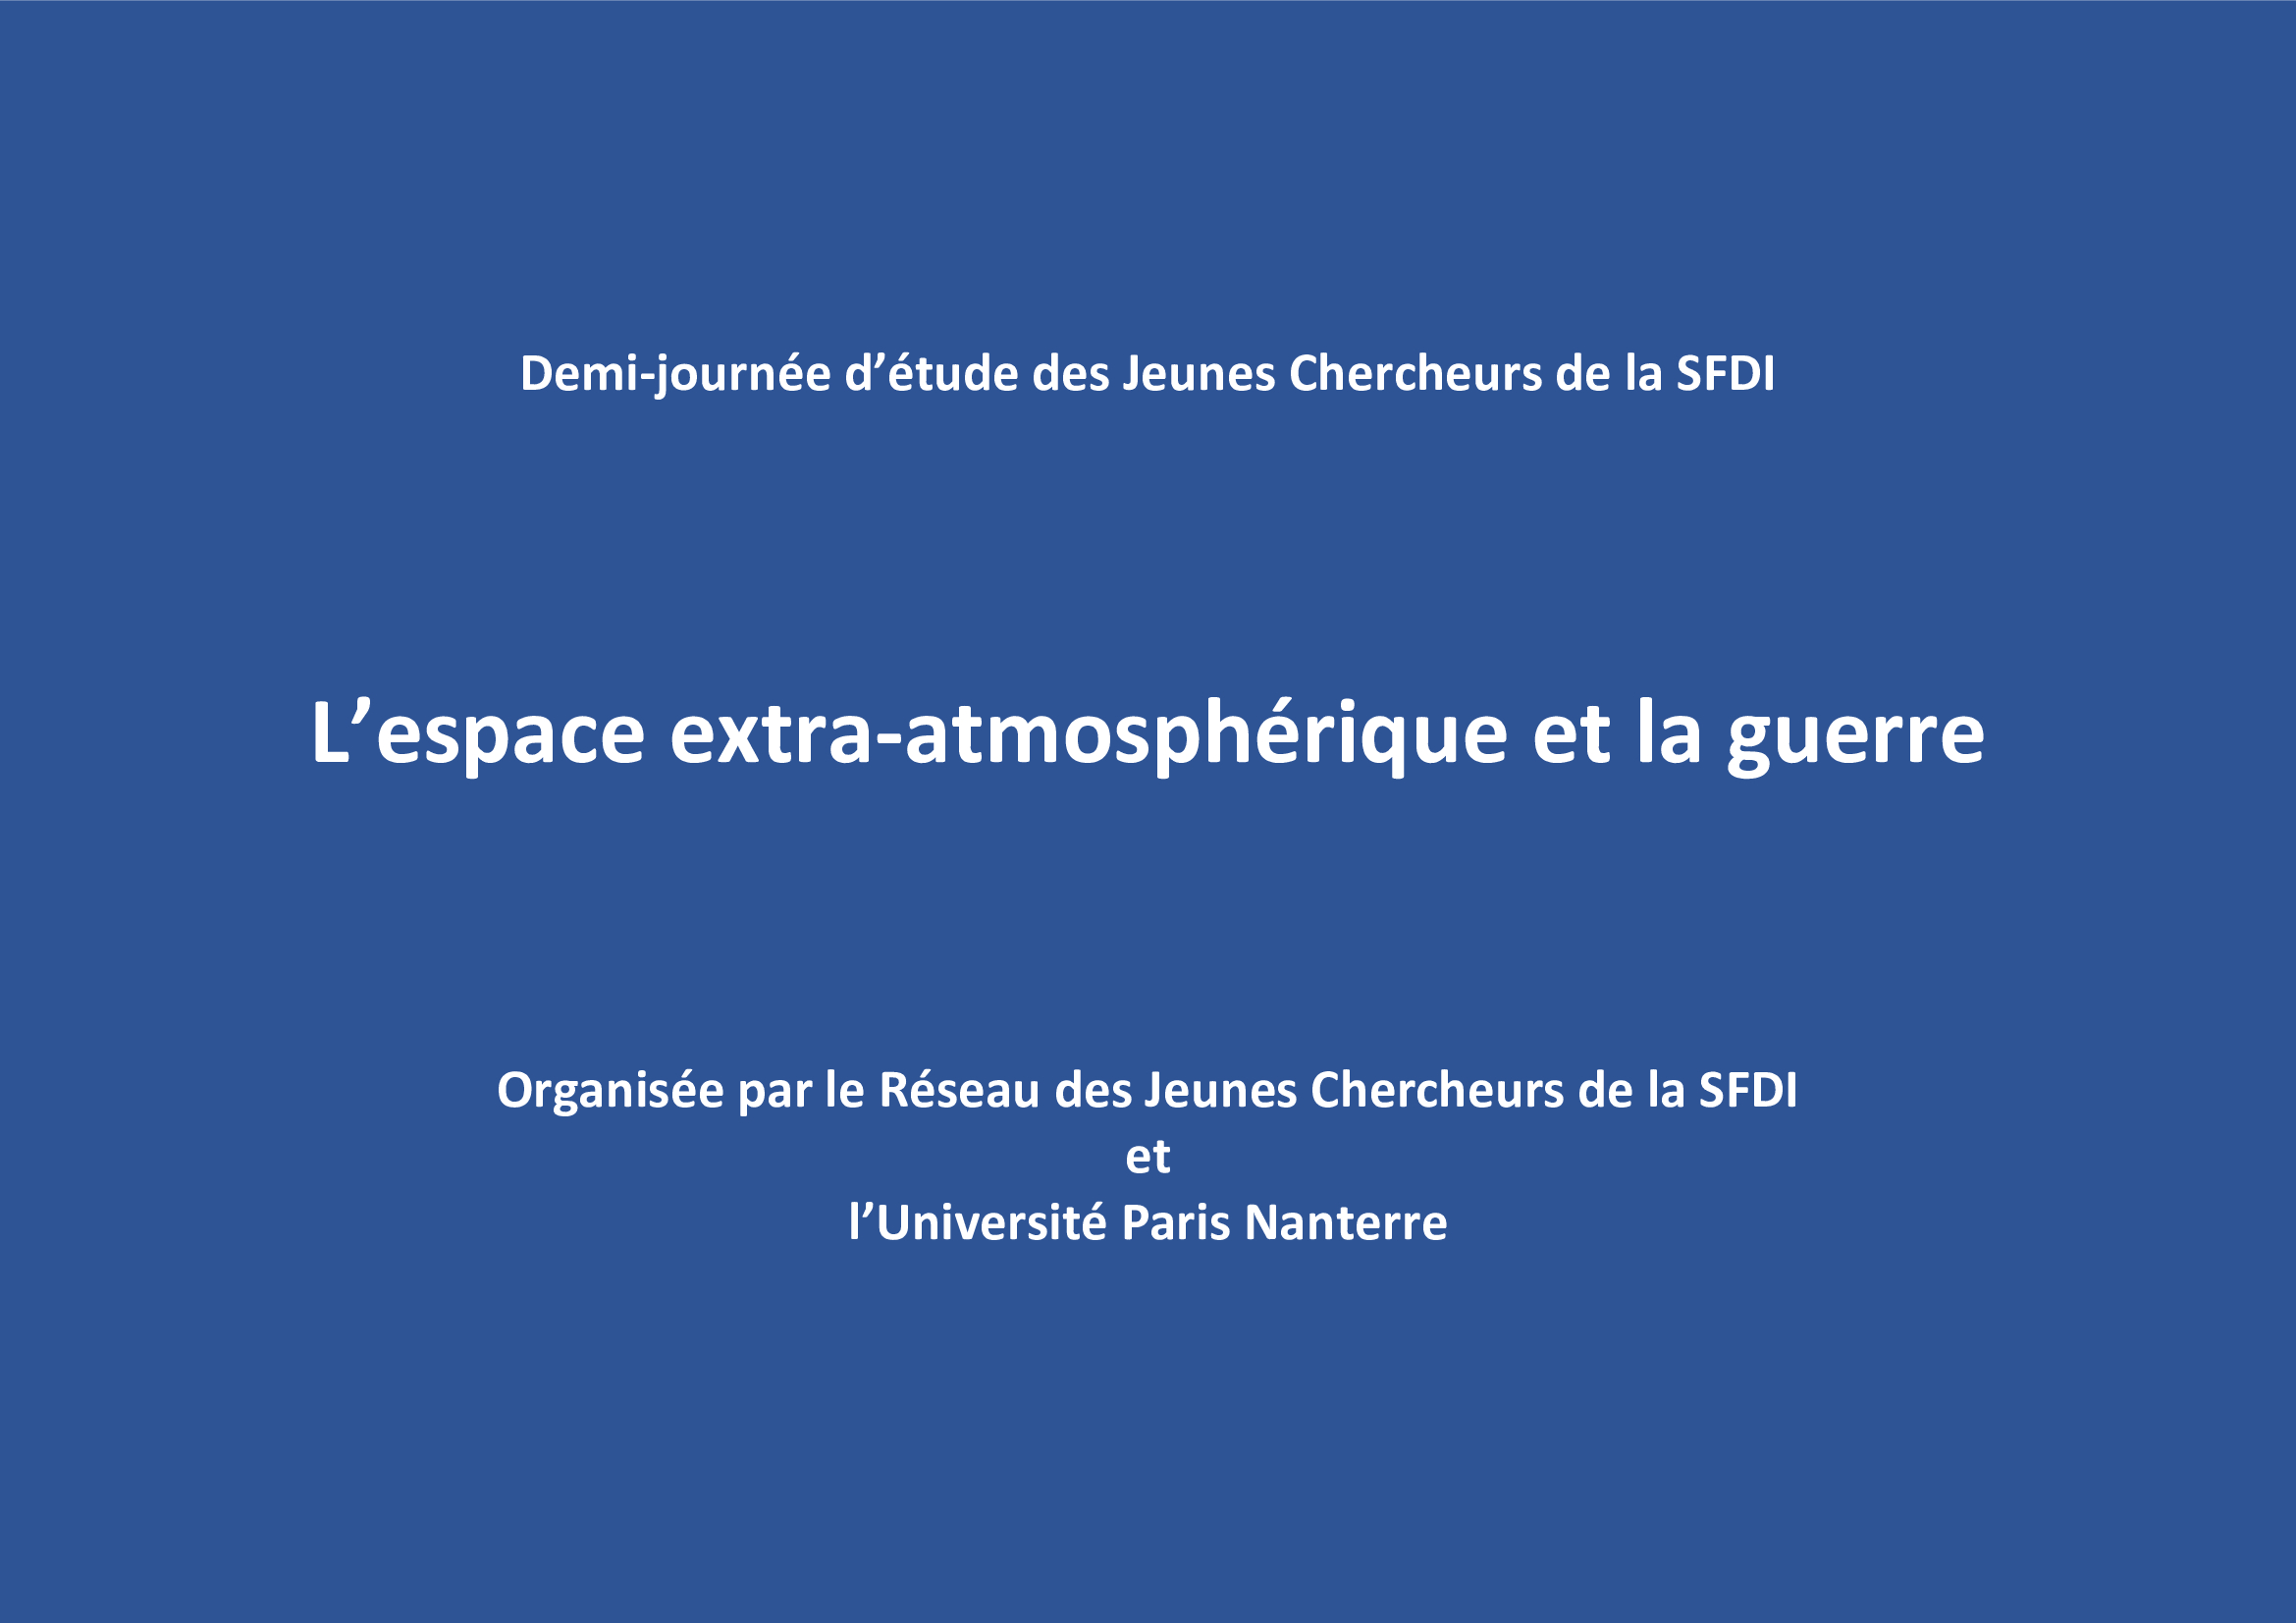 "Les principes de distinction et de proportionnalité dans l’espace extra-atmosphérique", par L. Perez